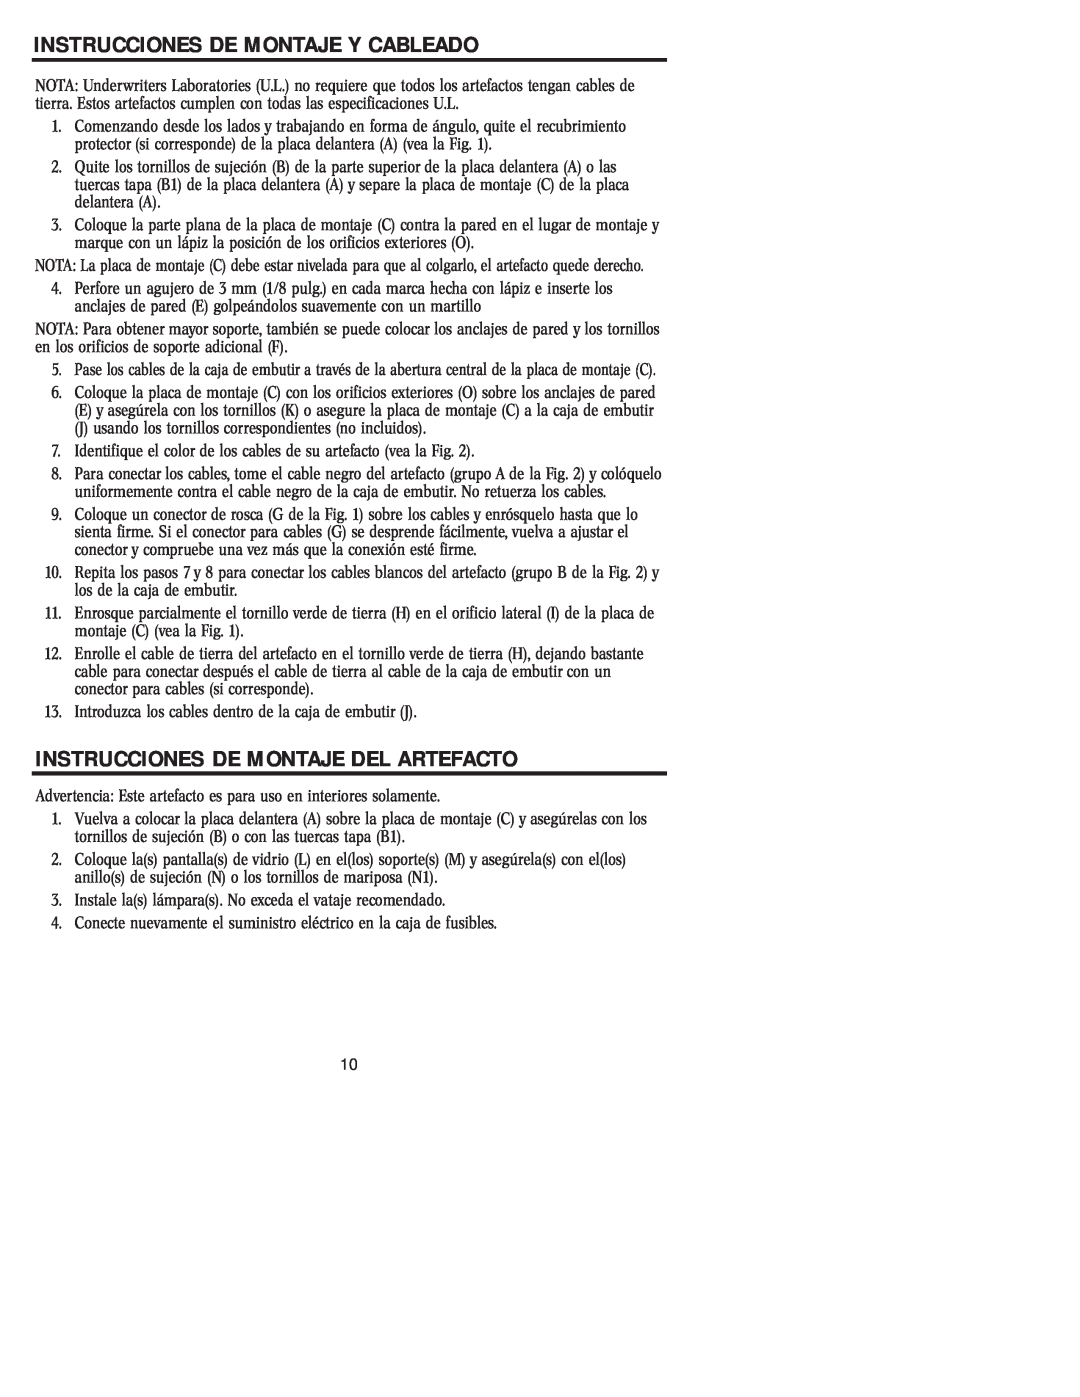 Westinghouse 72404 owner manual Instrucciones De Montaje Y Cableado, Instrucciones De Montaje Del Artefacto 